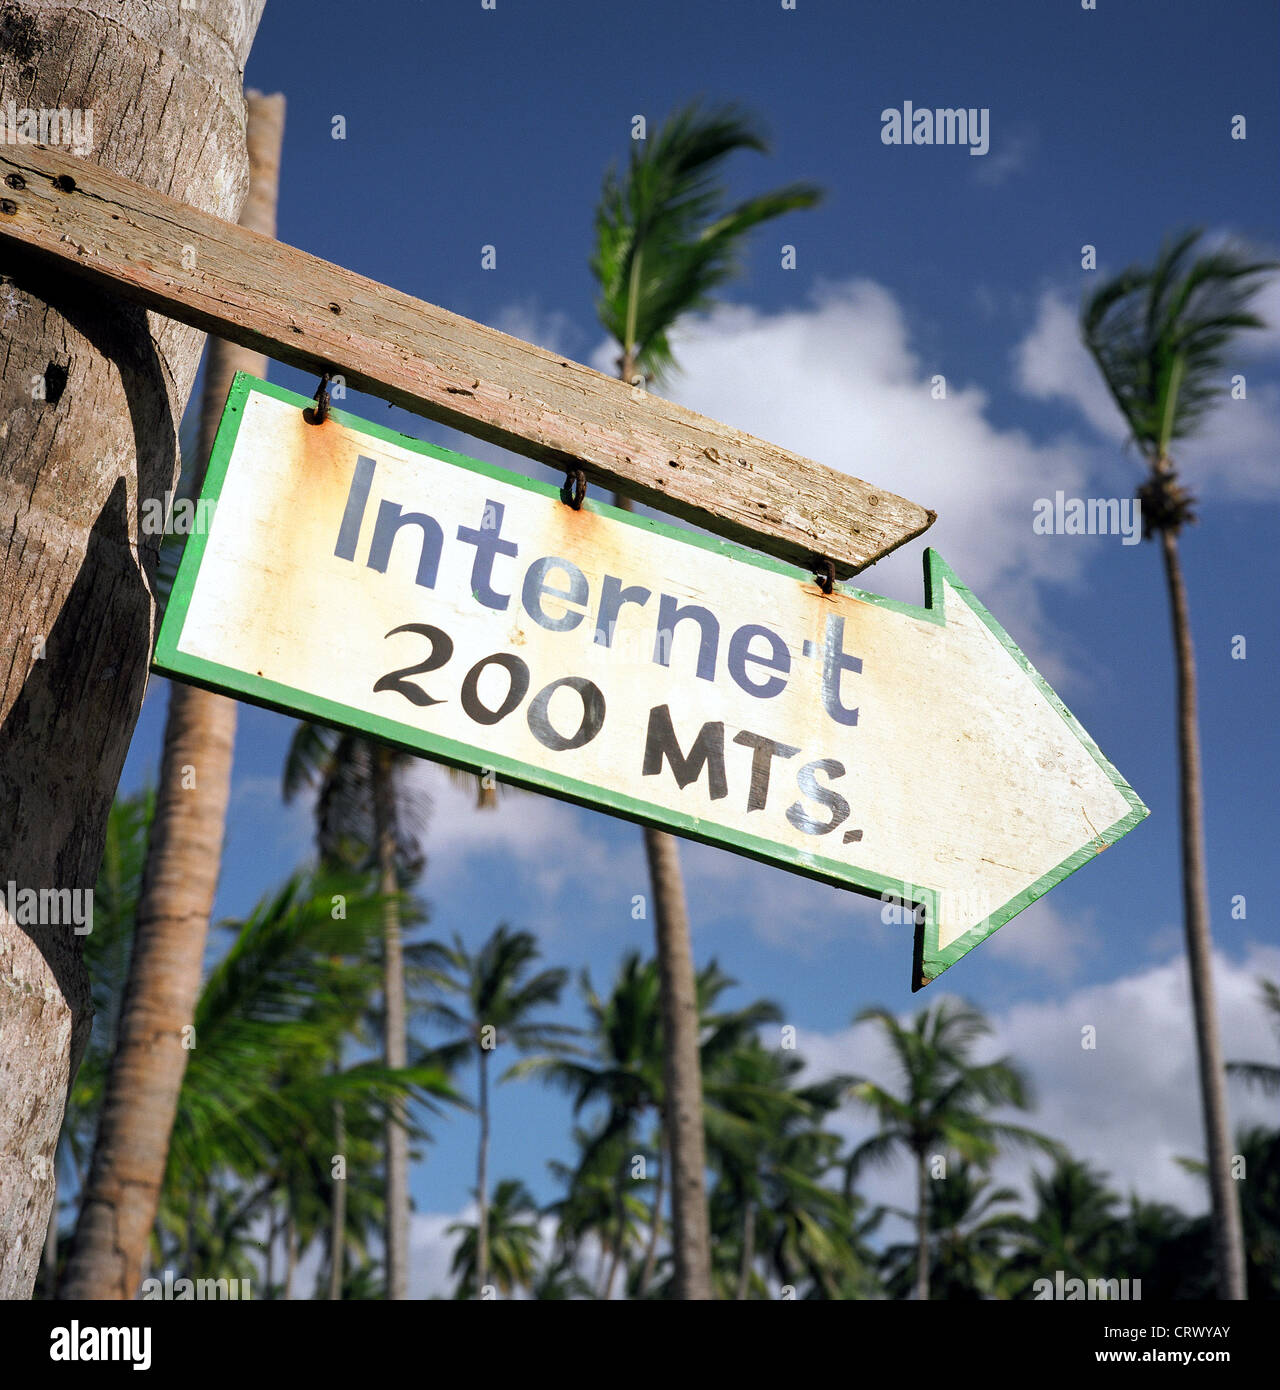 Nota para Internet Cafe, República Dominicana Foto de stock